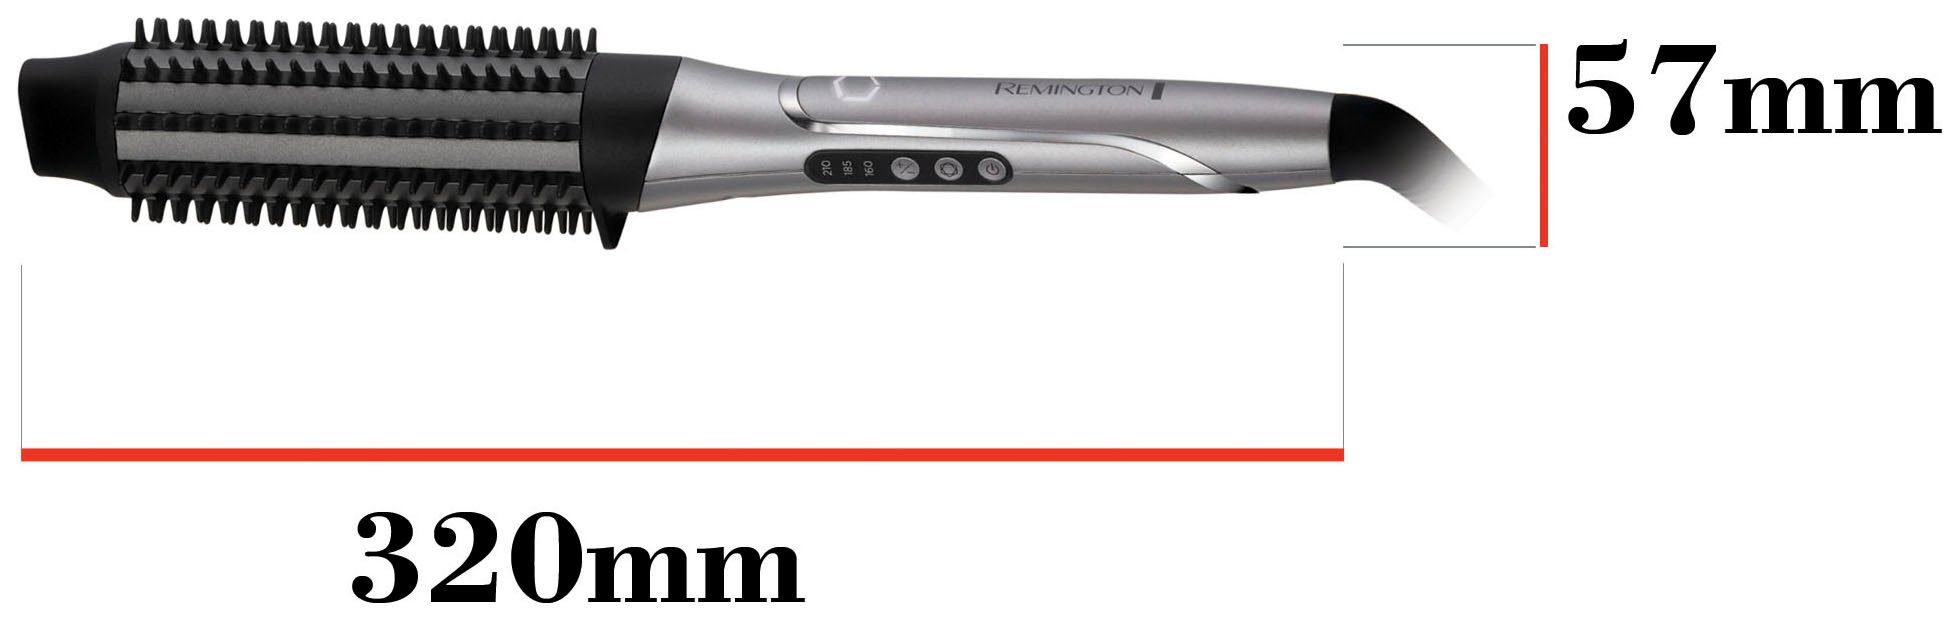 PROluxe personalisiert CB9800, Airstyler/Rund-&Warmluftbürste) (lernfähiger Remington Hitze Volumenbürste You Warmluftbürste